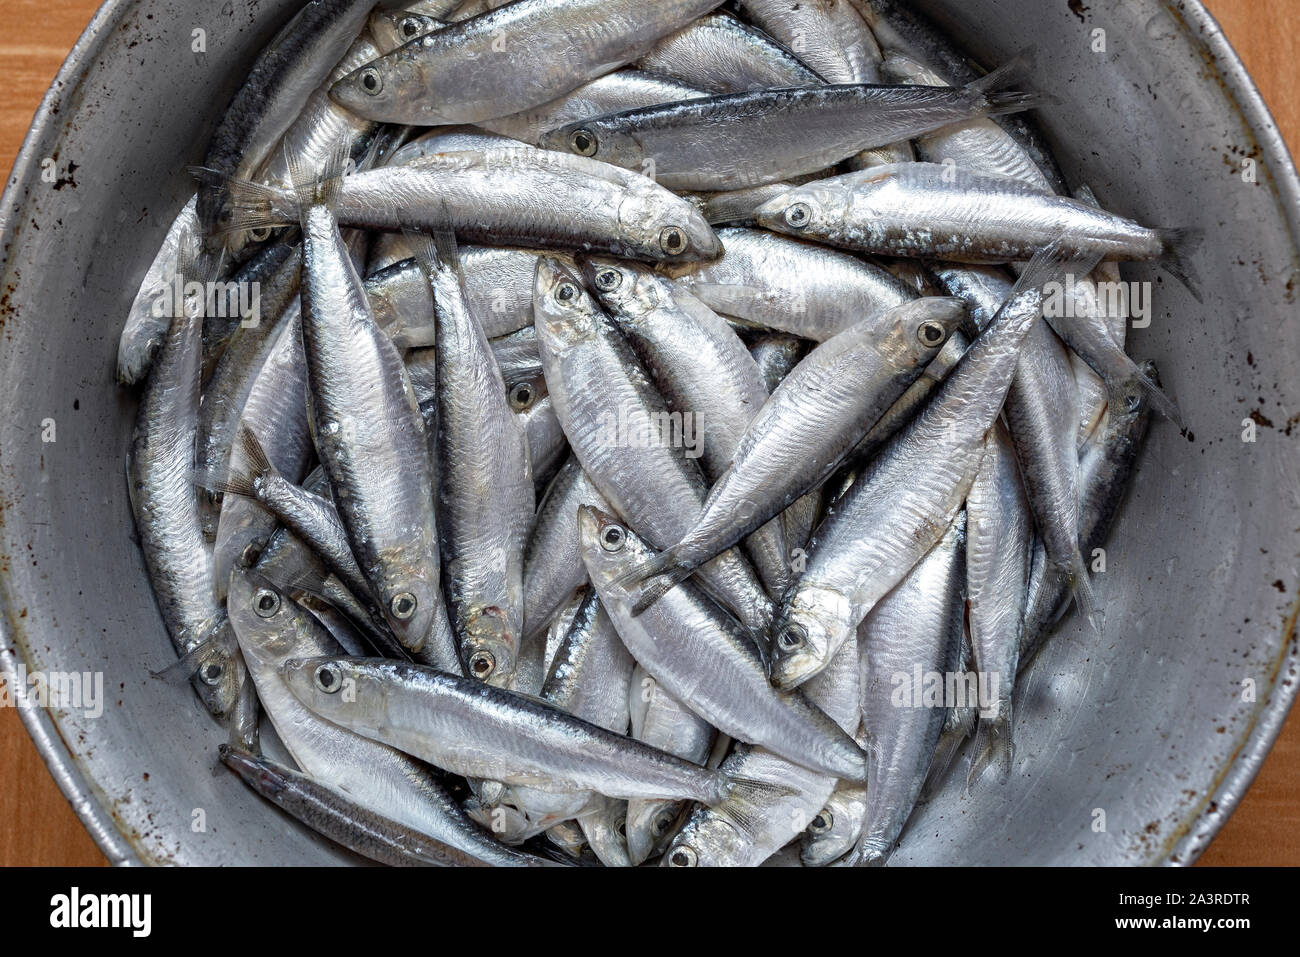 Le sprat fraîchement pêché les poissons dans une casserole en métal Banque D'Images